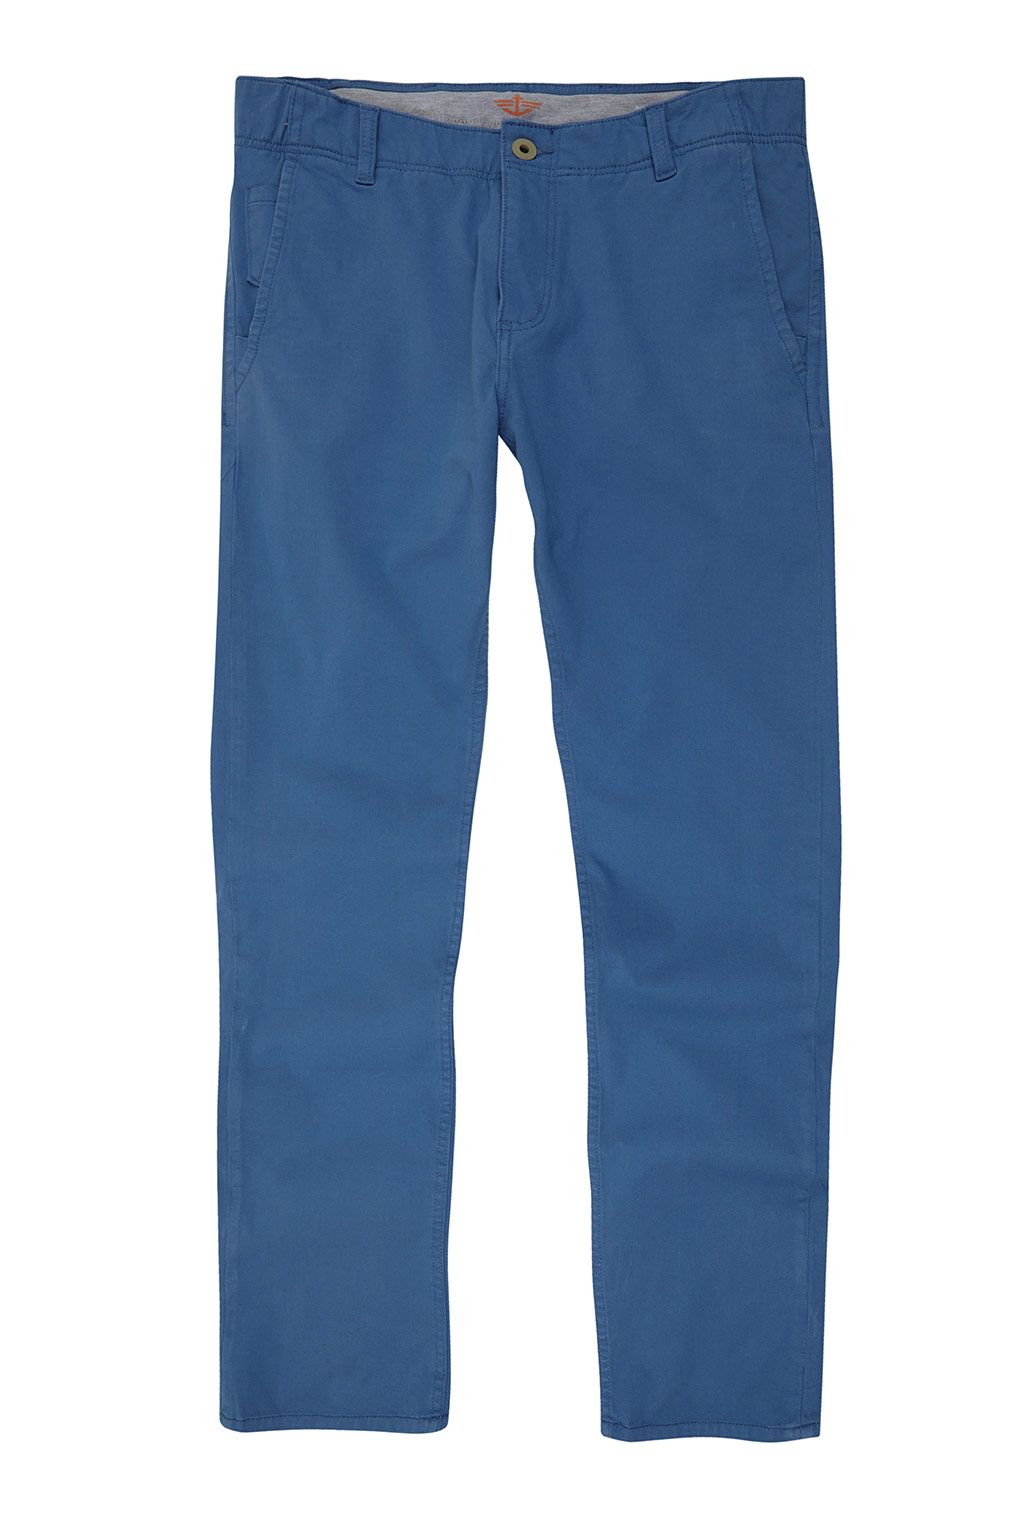 Dockers pantalones - Los pantalones Dockers que vas a querer vestir el verano